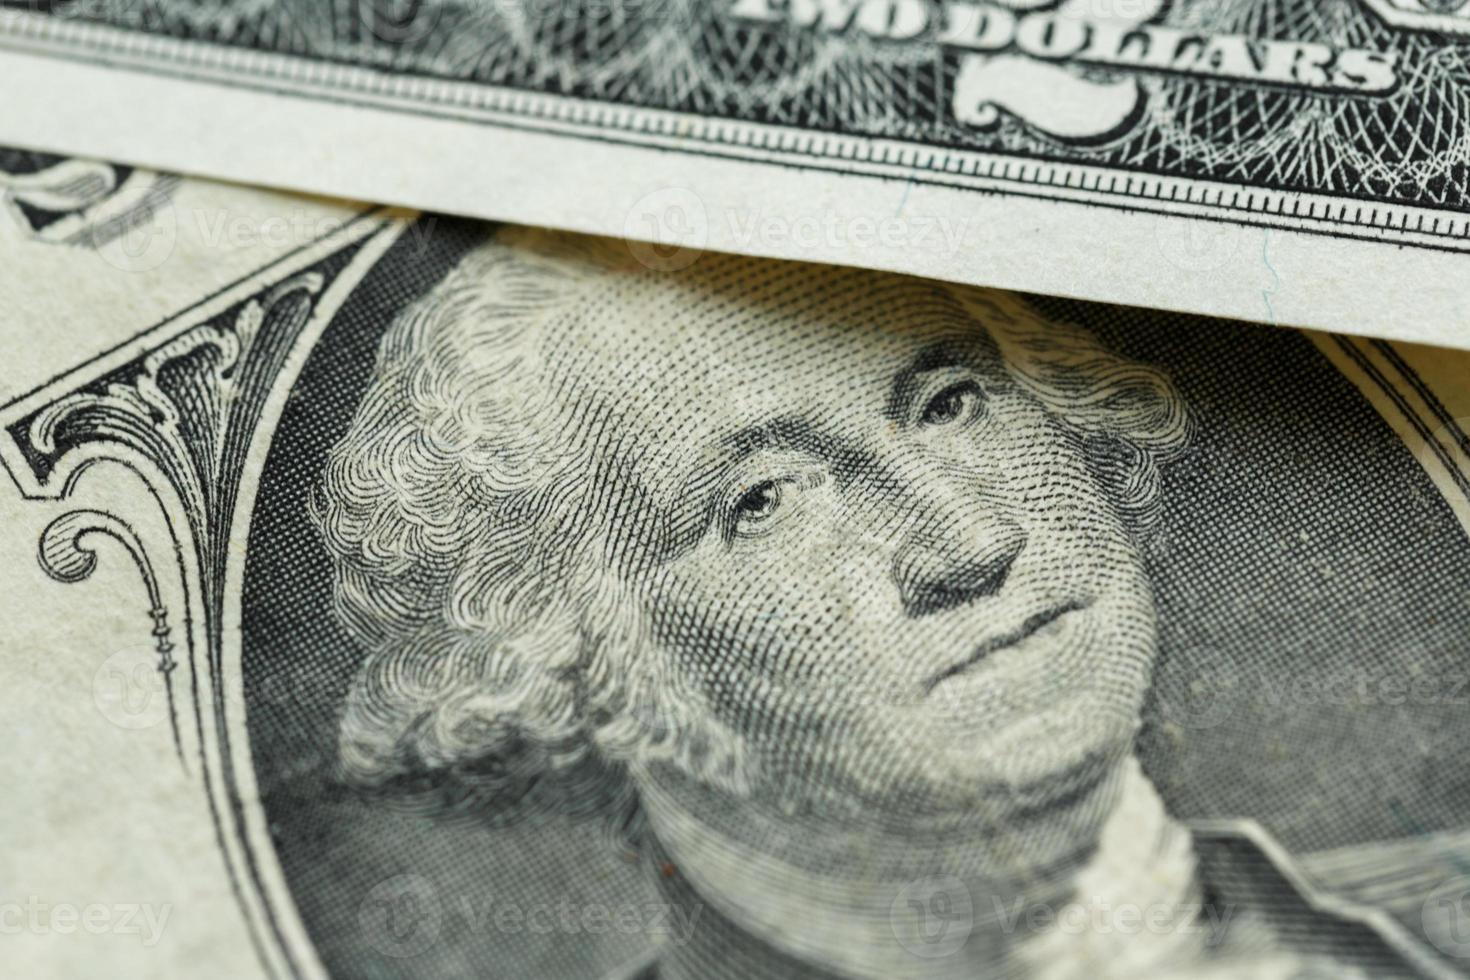 Giorgio Washington ritratto su il noi uno dollaro conto macro foto